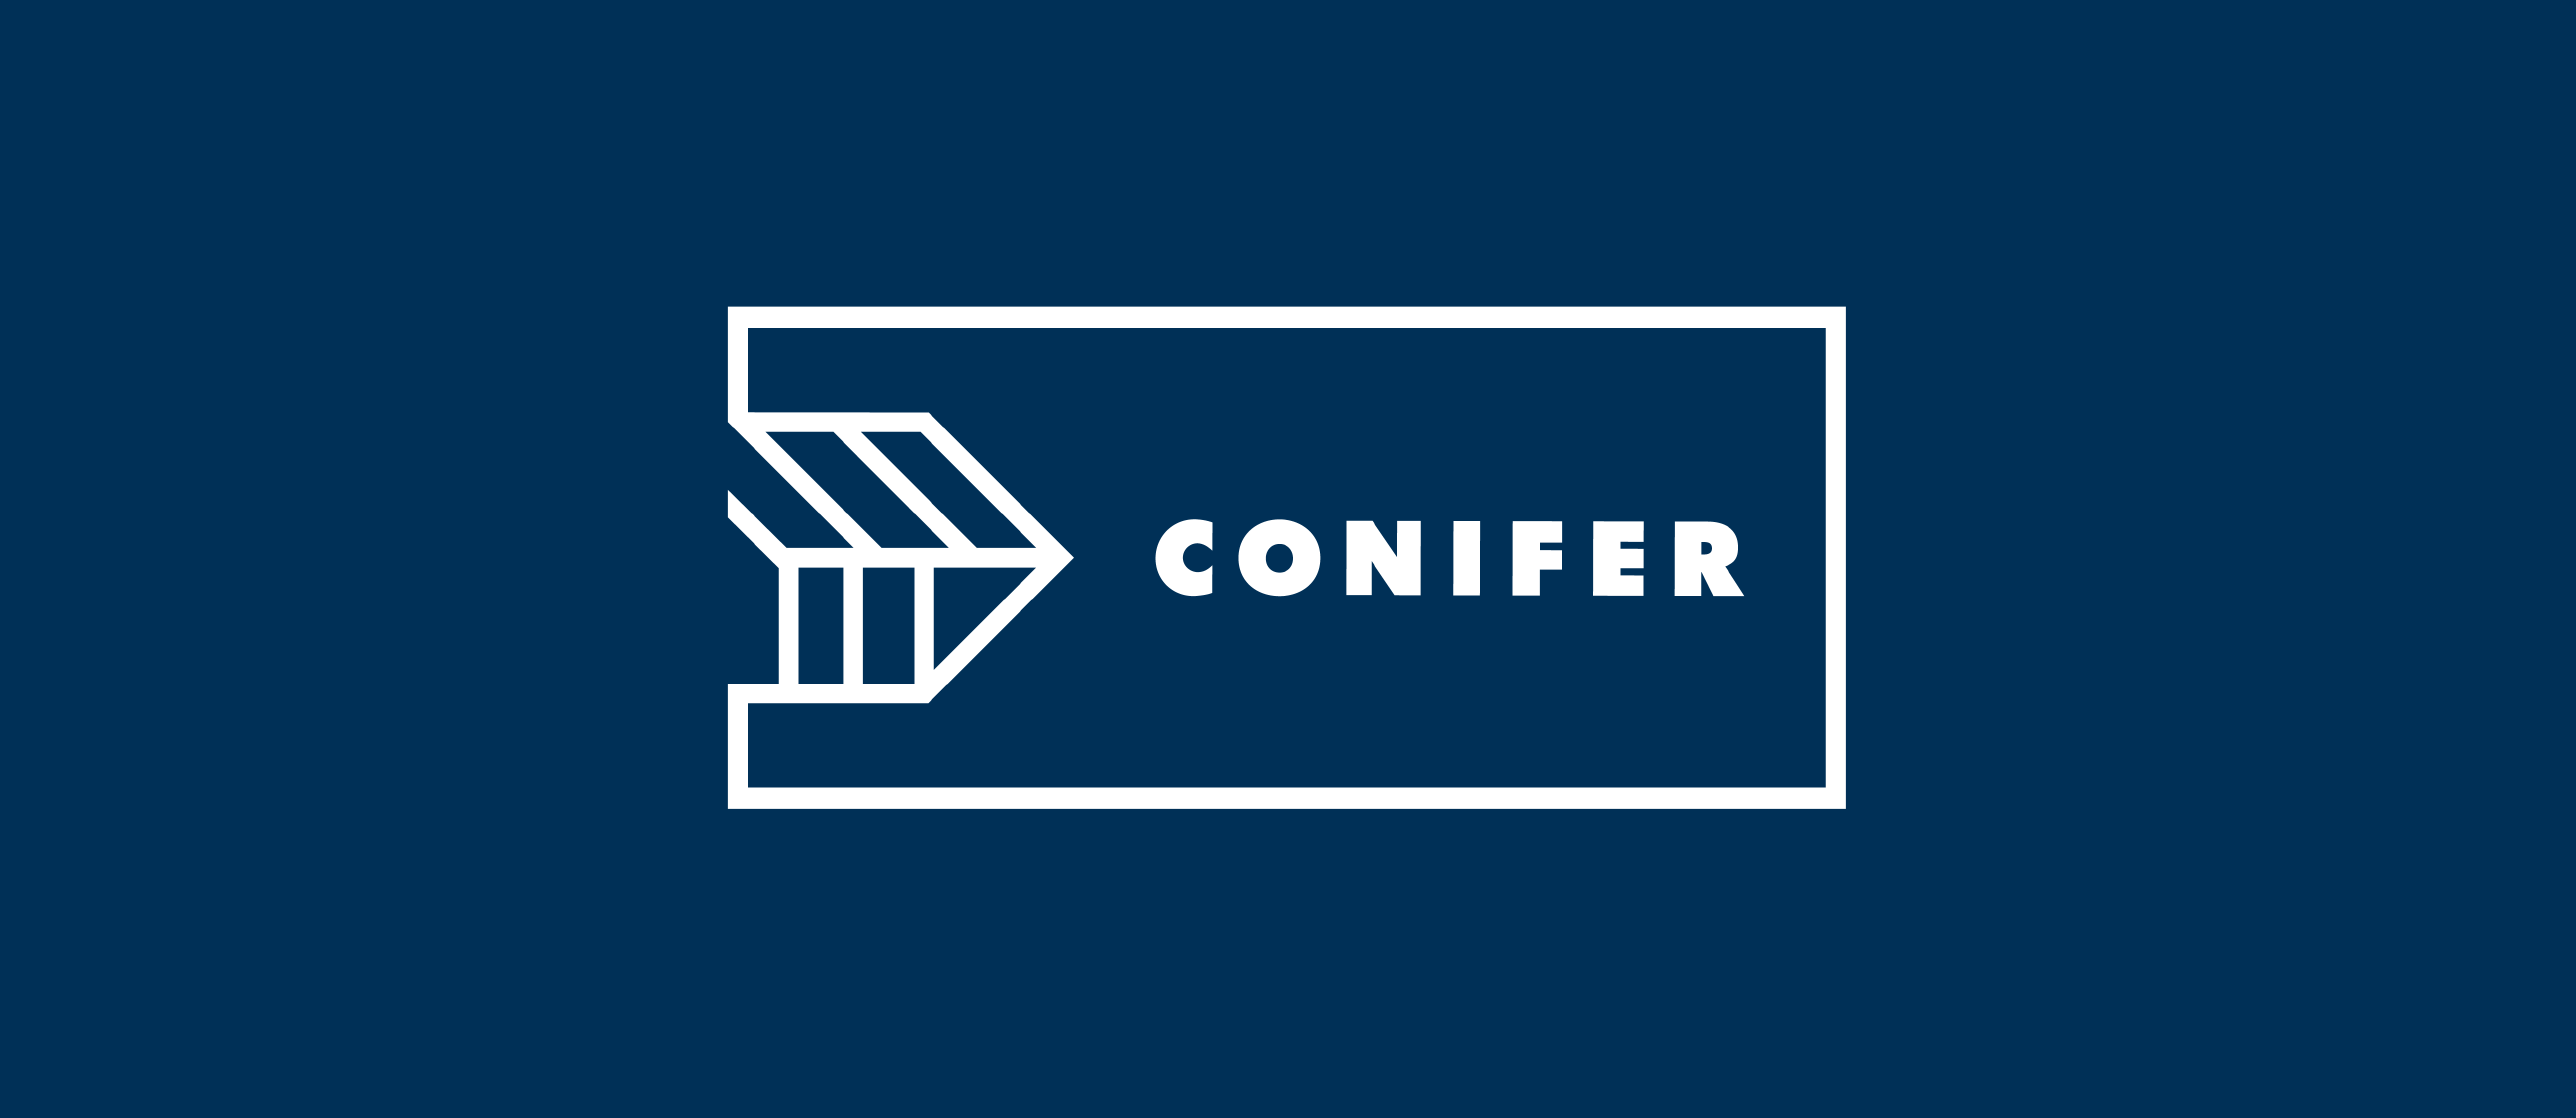 conifer research logo